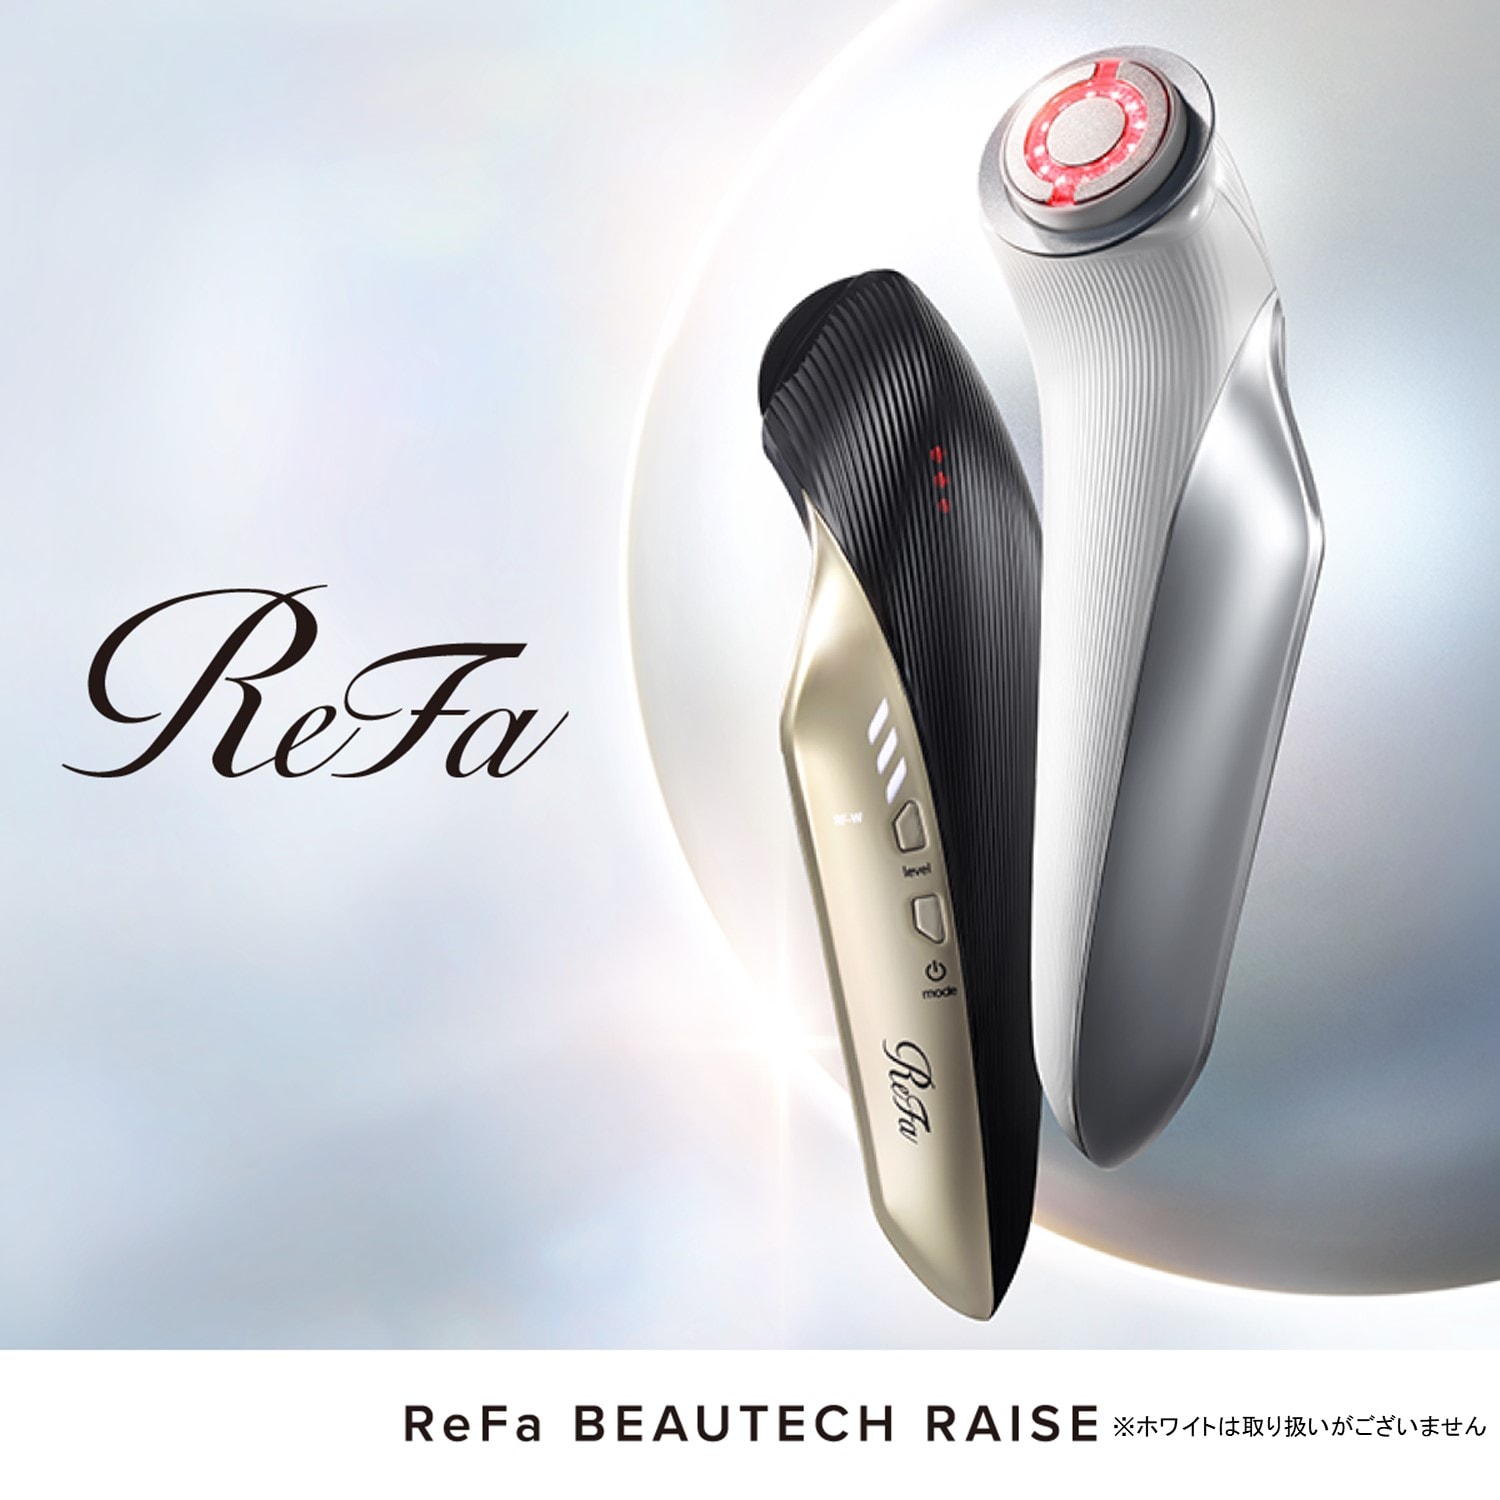 Refa Beautech Raise 美顔器-